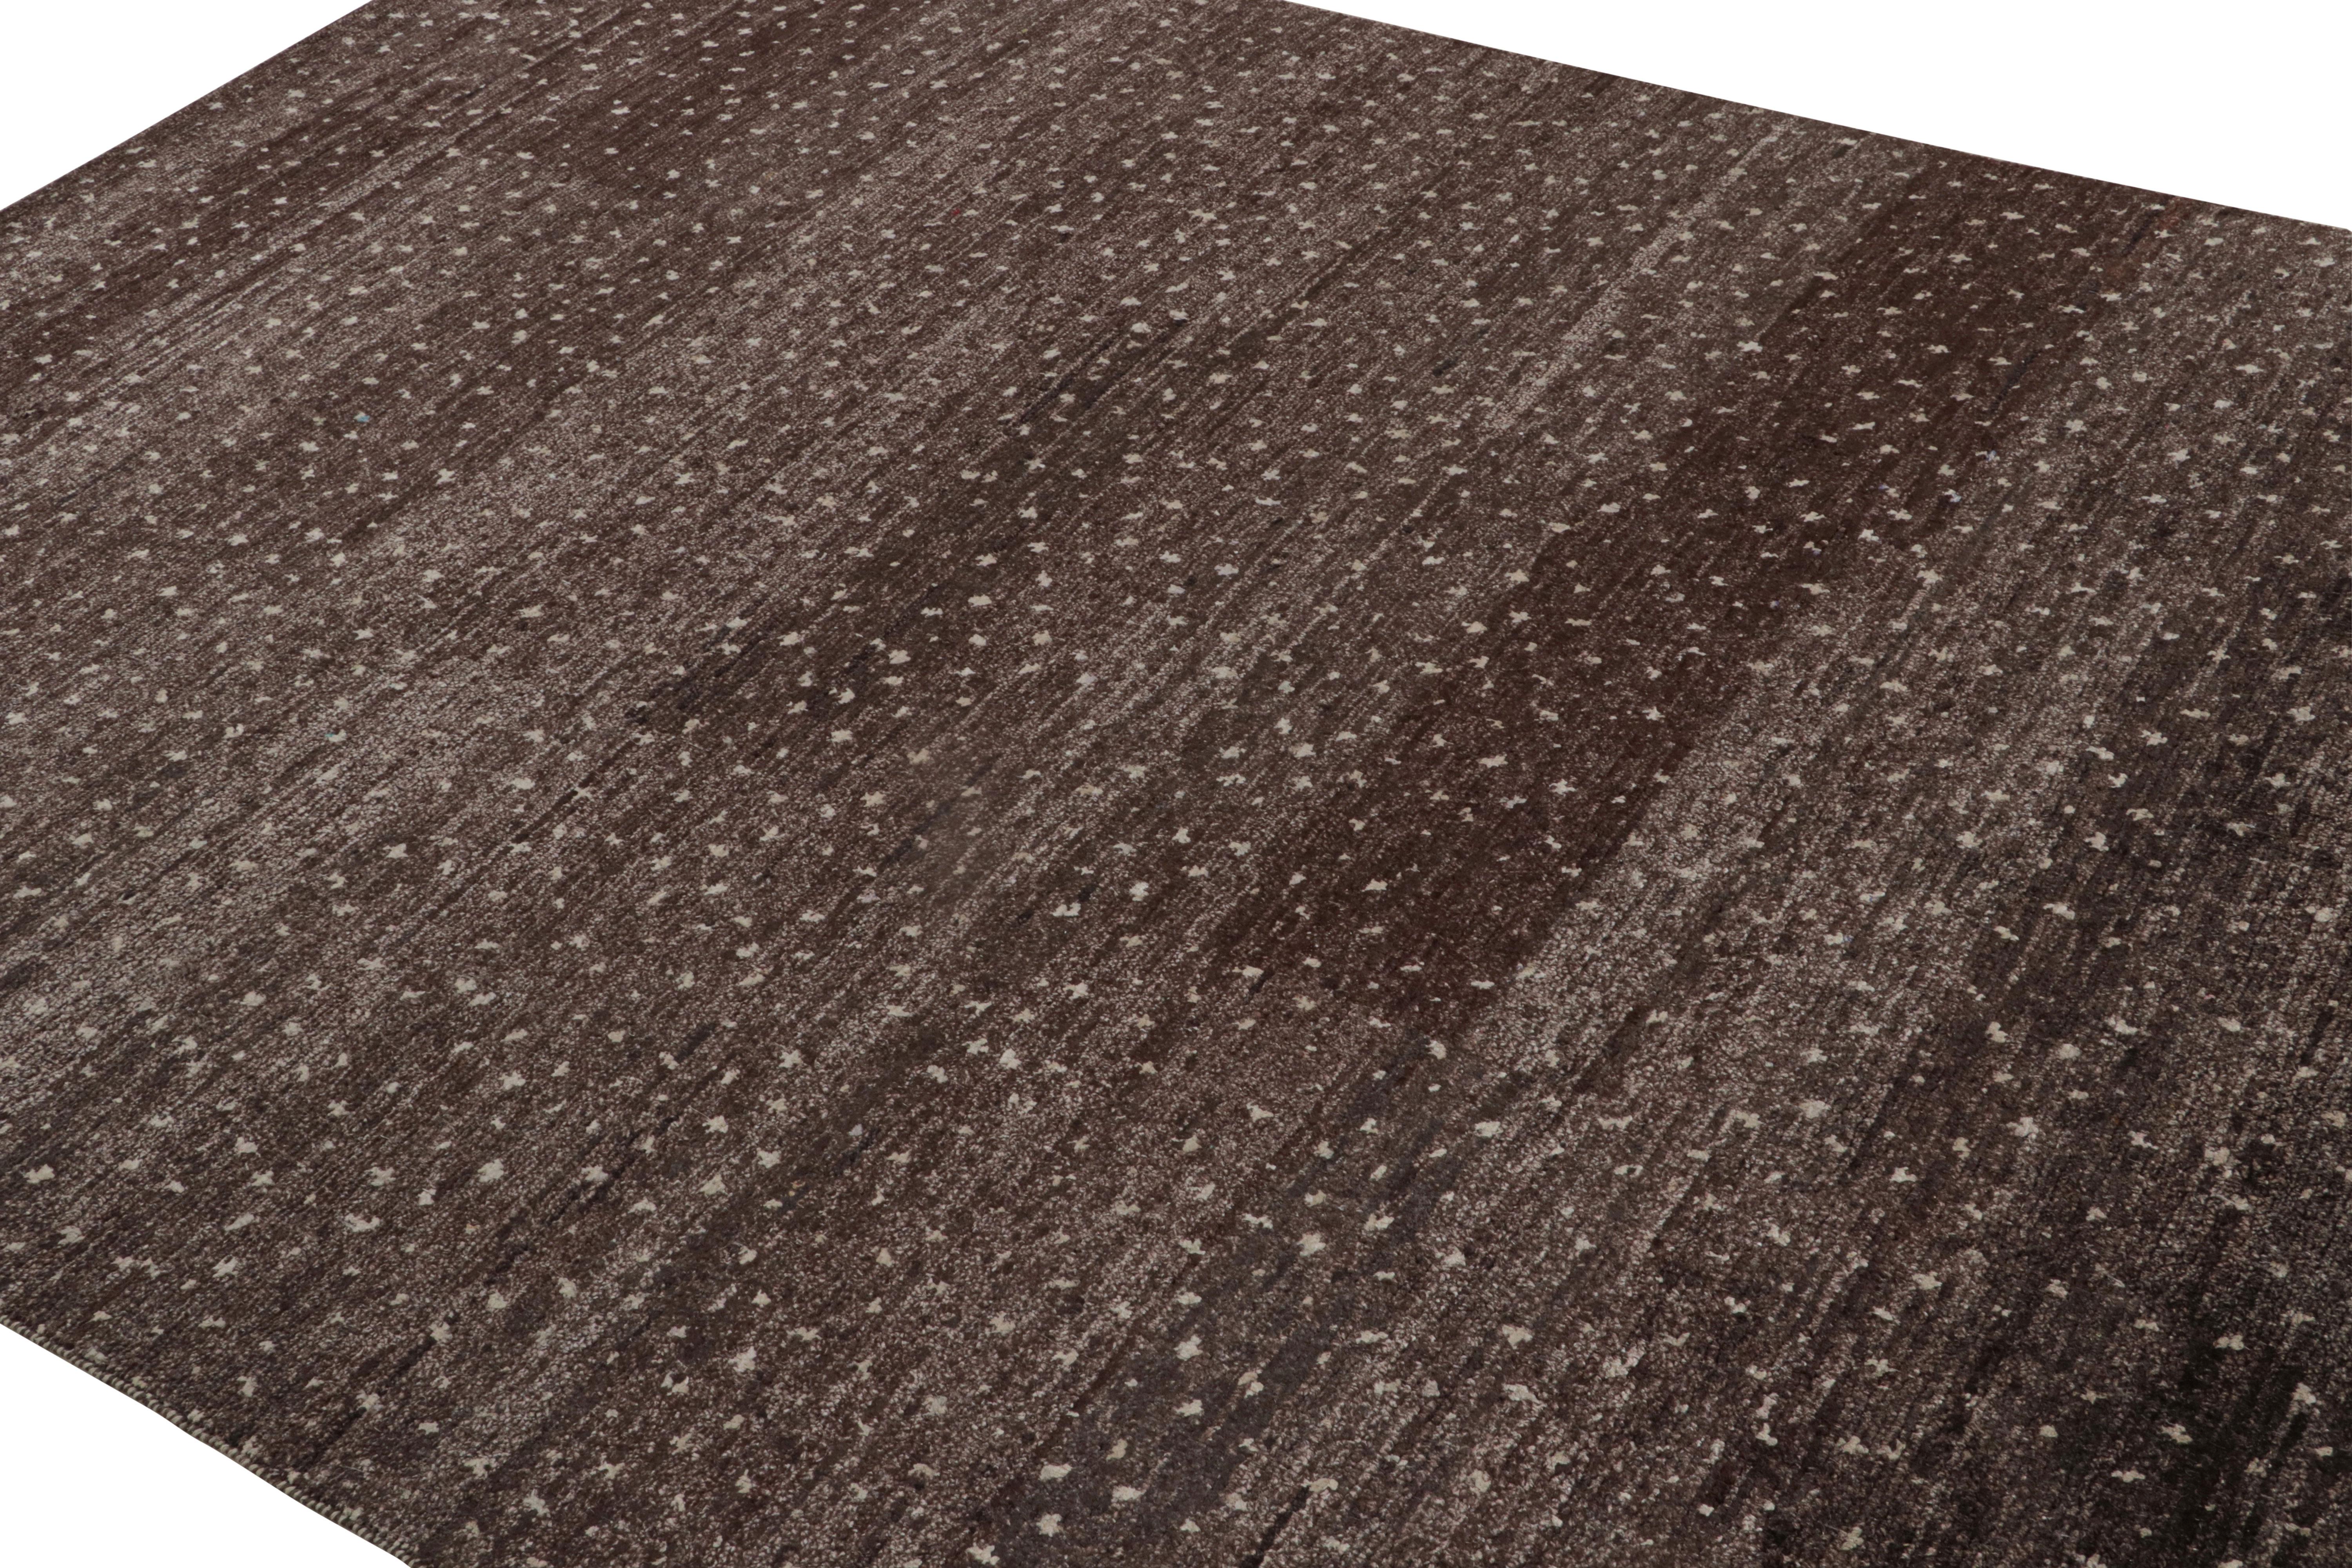 Noué à la main en soie et en coton, ce tapis contemporain minimaliste 6x9 en aubergine et mauve brunâtre souligne un motif de points blanc cassé avec un abrash de riches tons bruns et anthracite. 

Sur le Design : 

Un ajout passionnant à la